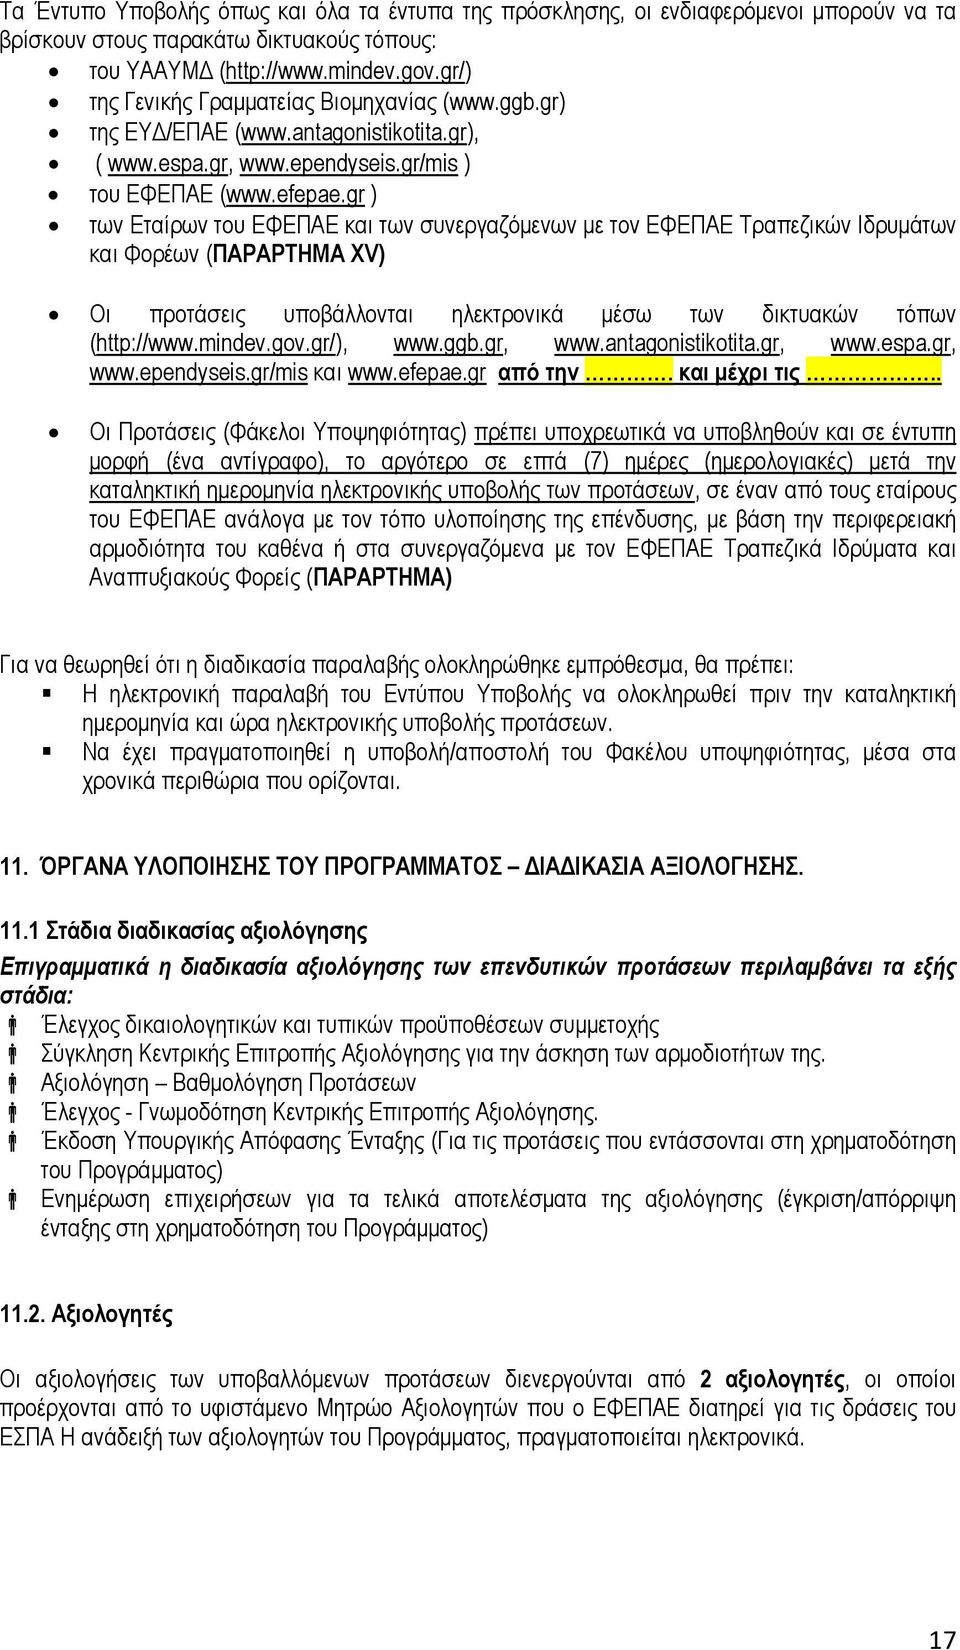 gr ) των Εταίρων του ΕΦΕΠΑΕ και των συνεργαζόµενων µε τον ΕΦΕΠΑΕ Τραπεζικών Ιδρυµάτων και Φορέων (ΠΑΡΑΡΤΗΜΑ XV) Οι προτάσεις υποβάλλονται ηλεκτρονικά µέσω των δικτυακών τόπων (http://www.mindev.gov.